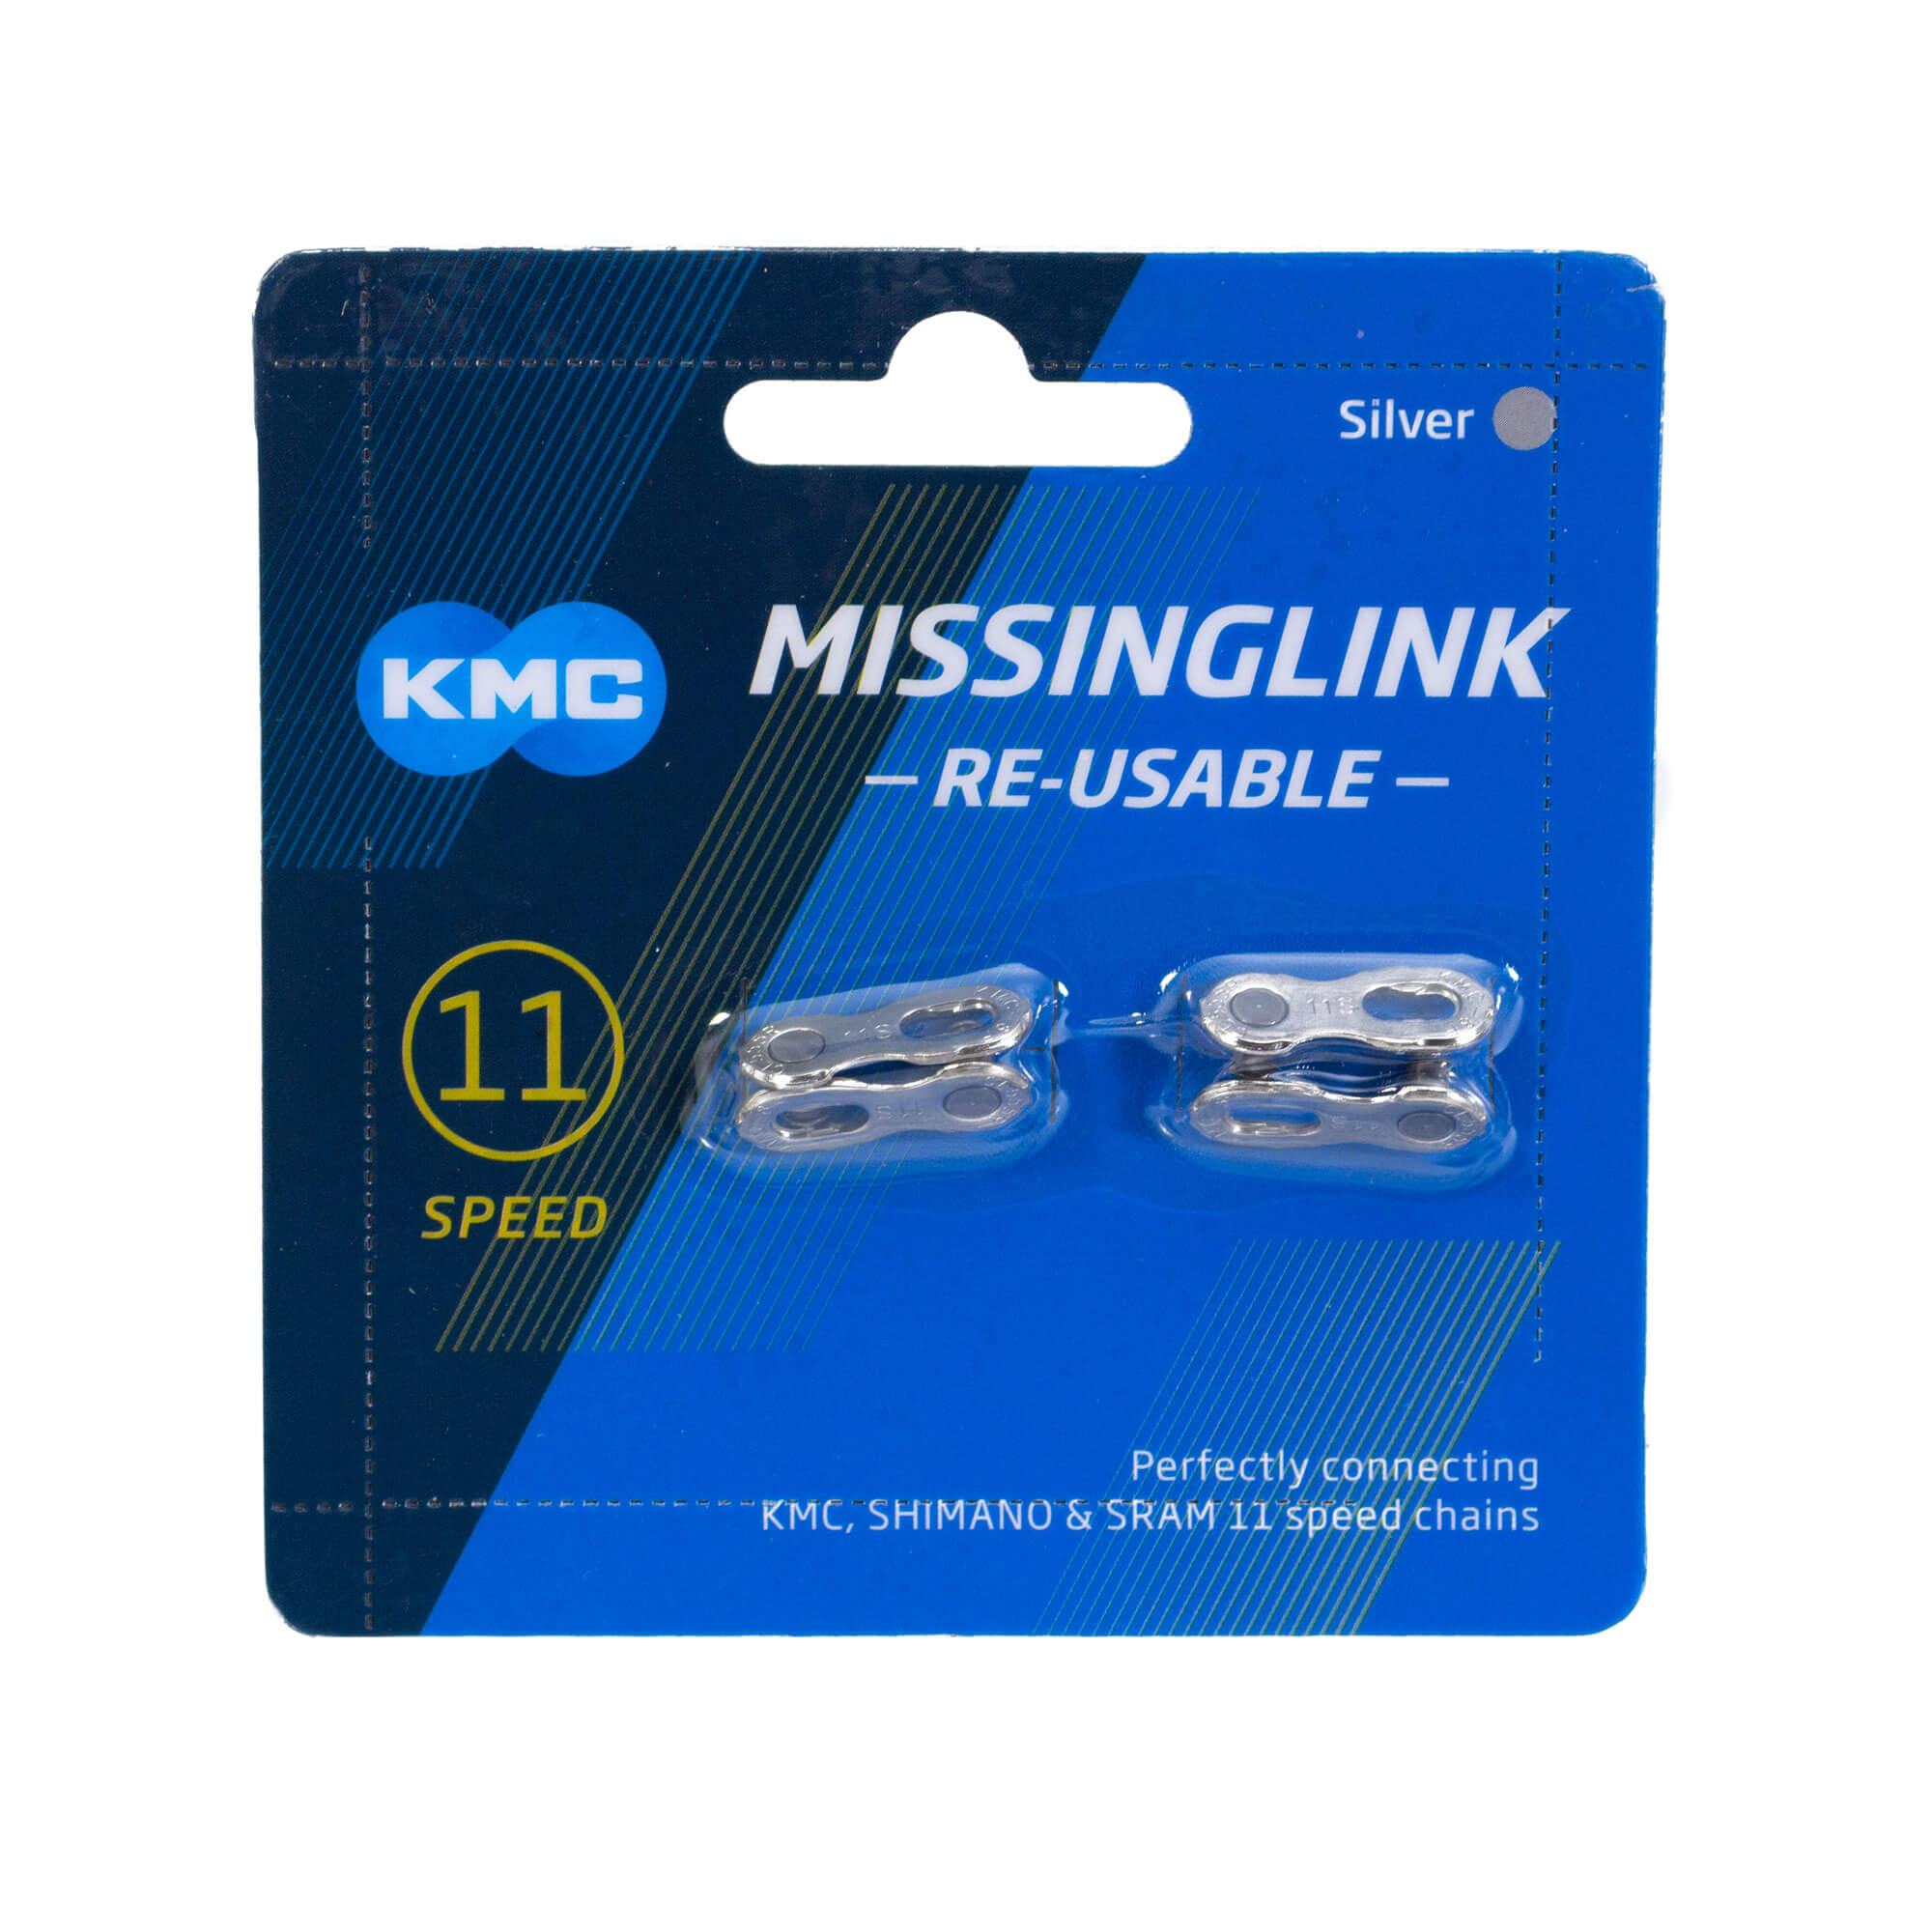 Missing Link 11 v. – KMC (Power link)